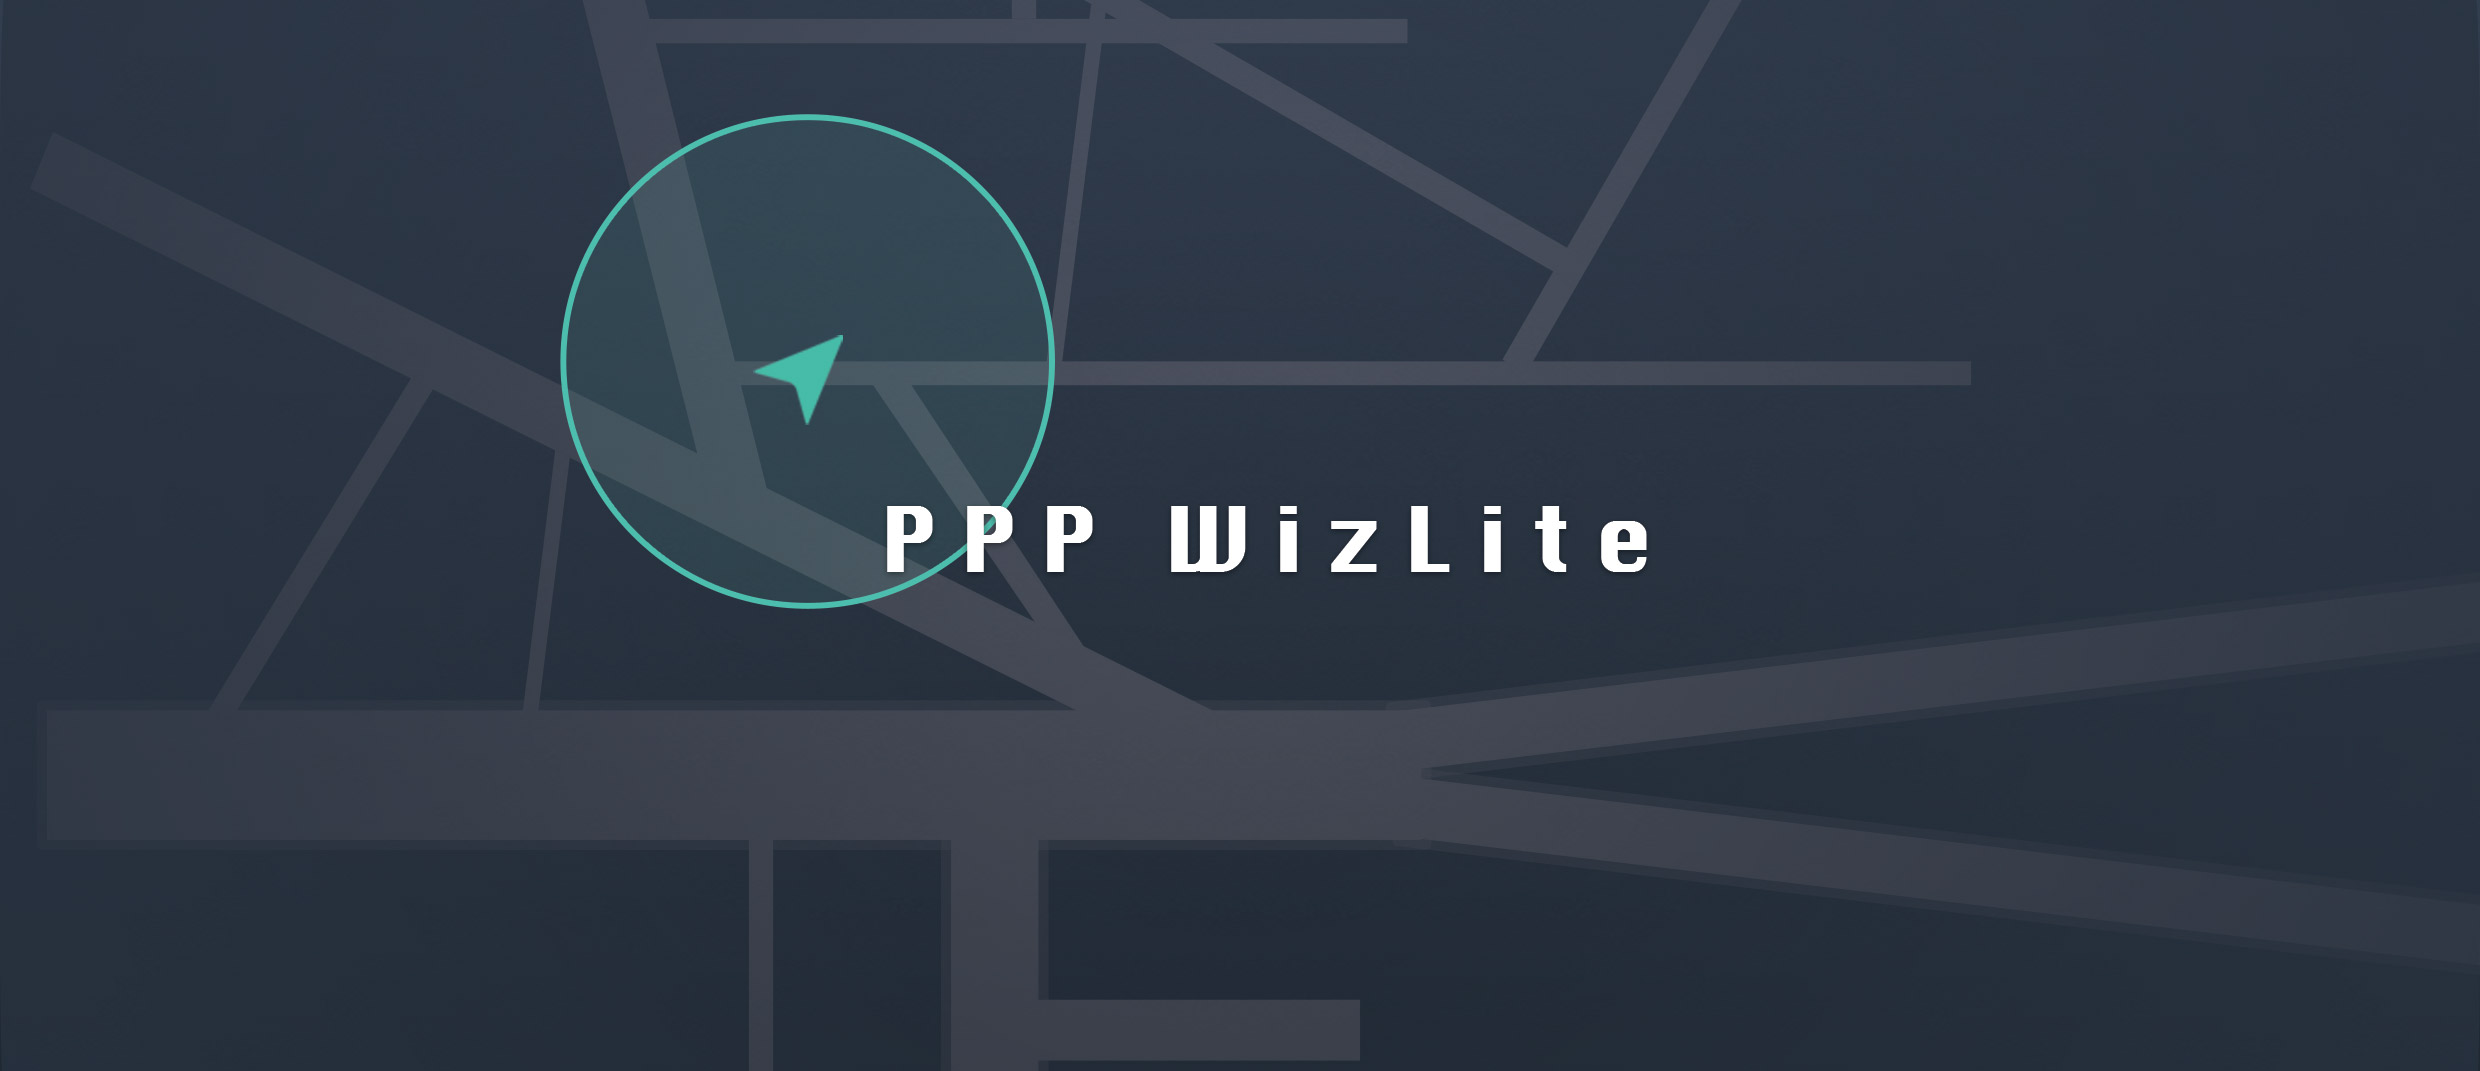 PPP WizLite